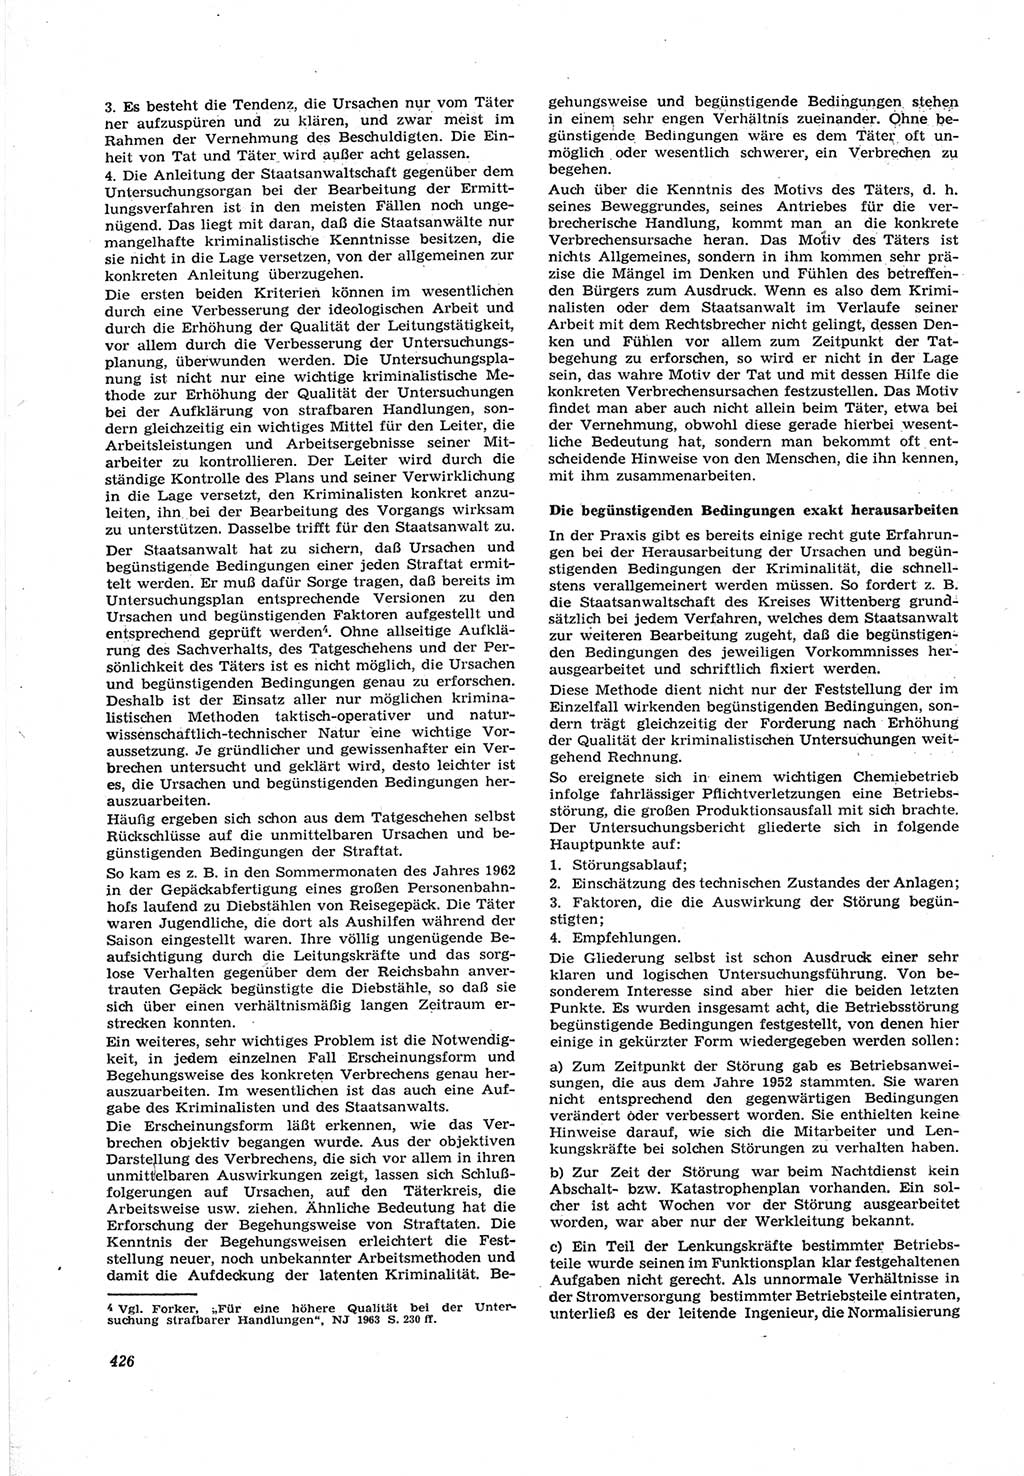 Neue Justiz (NJ), Zeitschrift für Recht und Rechtswissenschaft [Deutsche Demokratische Republik (DDR)], 17. Jahrgang 1963, Seite 426 (NJ DDR 1963, S. 426)